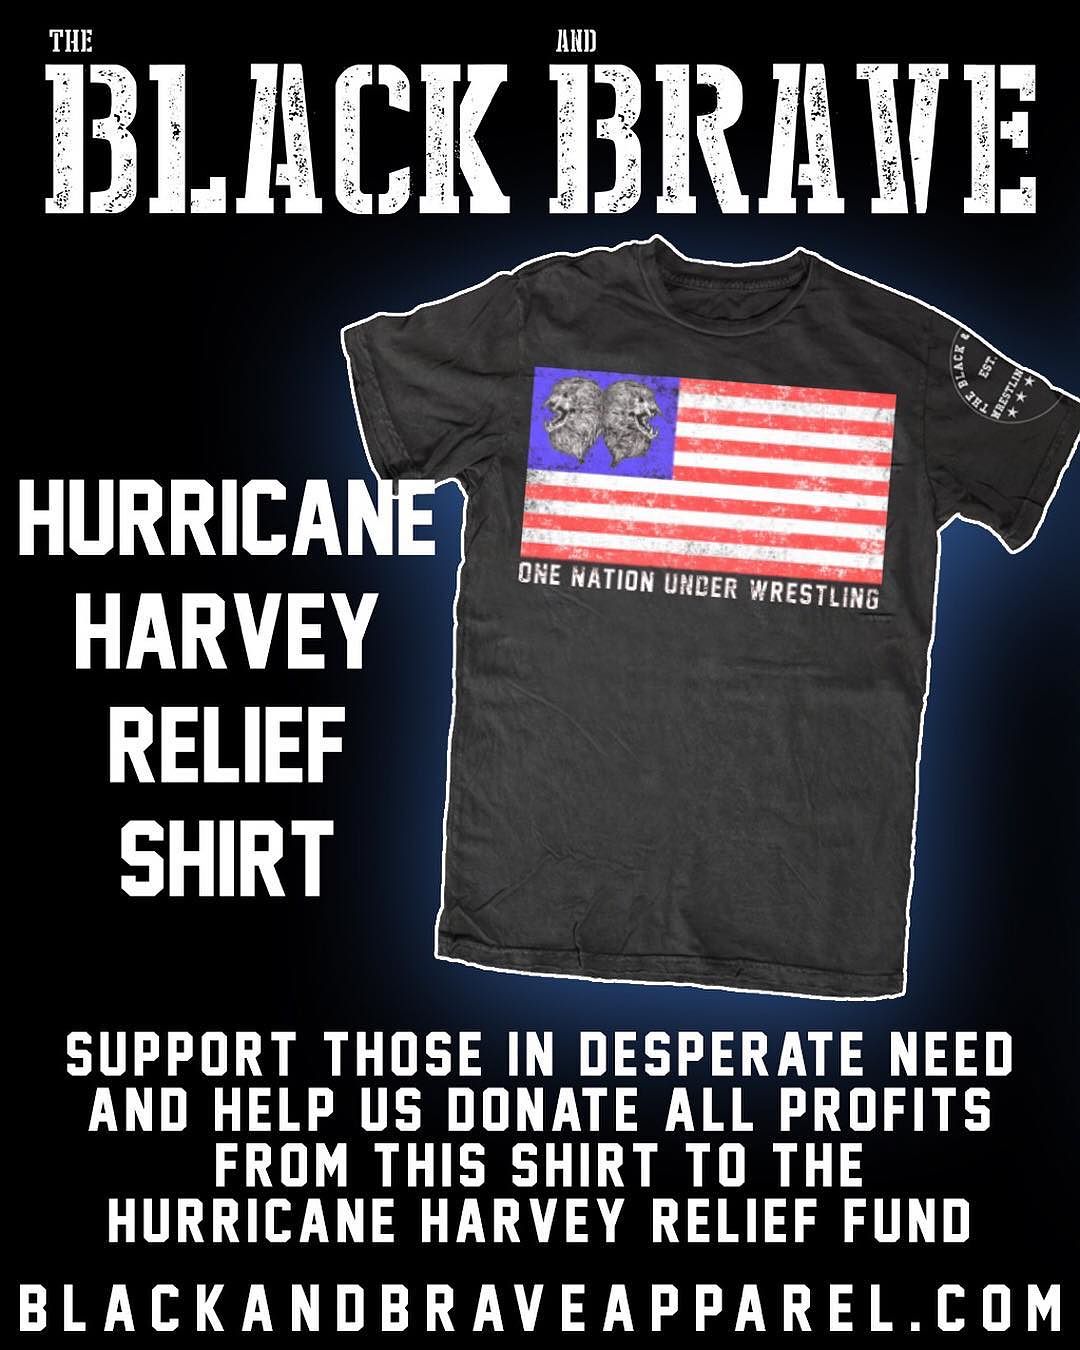 Сэт Роллинс и его кампания помощи пострадавшим от урагана Харви